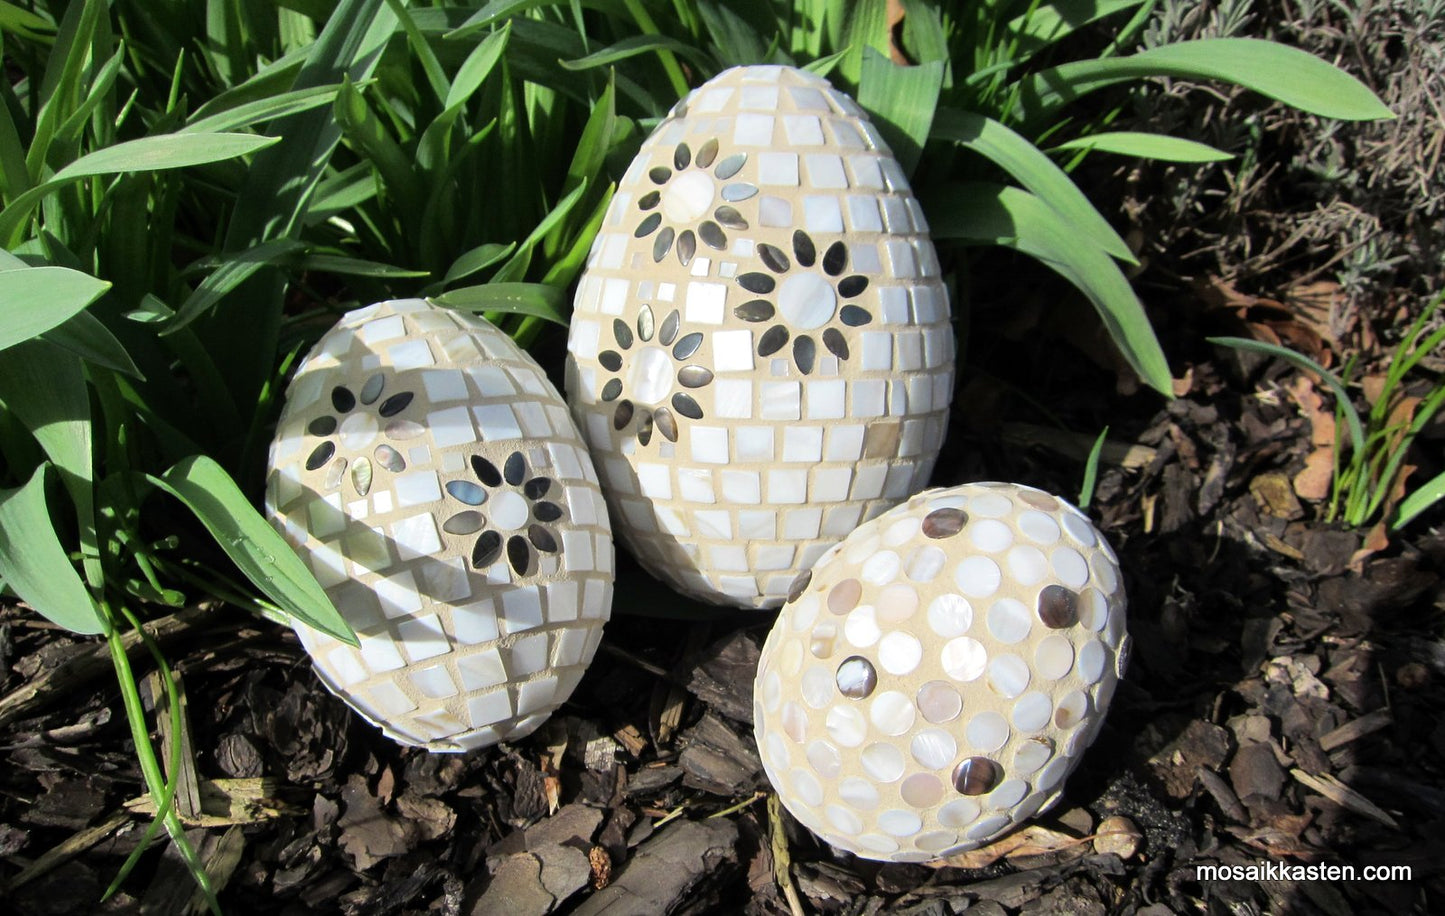 Mosaik Osterei Perlmutt Blume in 3 Größen - Mosaikkasten Deko für draußen Dekoidee